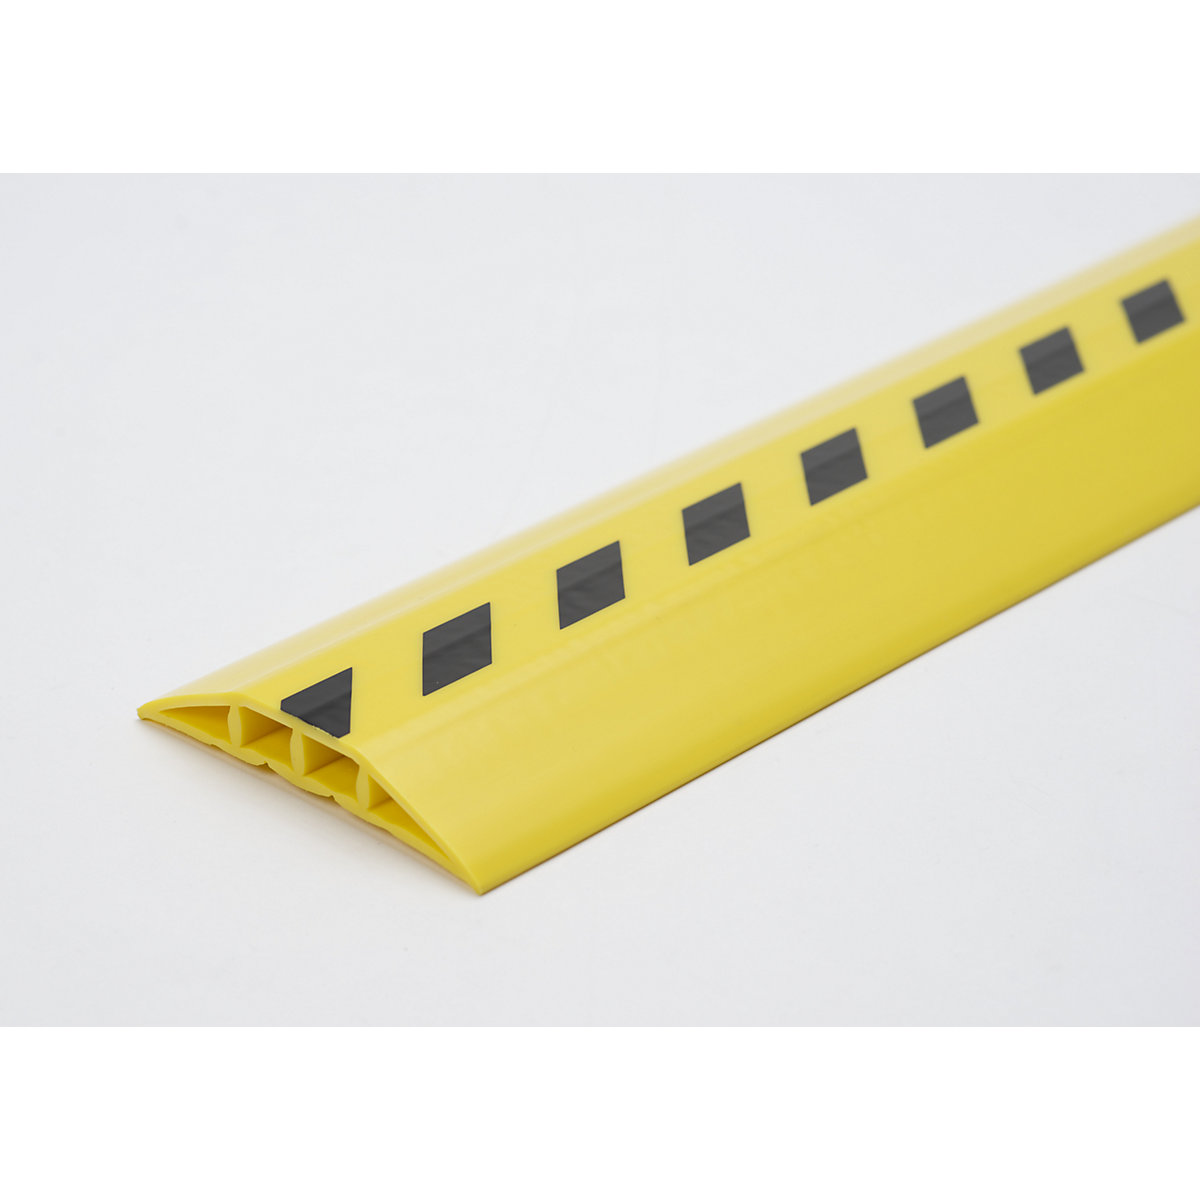 Gaine protège-câbles en plastique, pour tuyaux et câbles de Ø max. 10 mm, noir-jaune, 2 passages, longueur 1,5 m-5